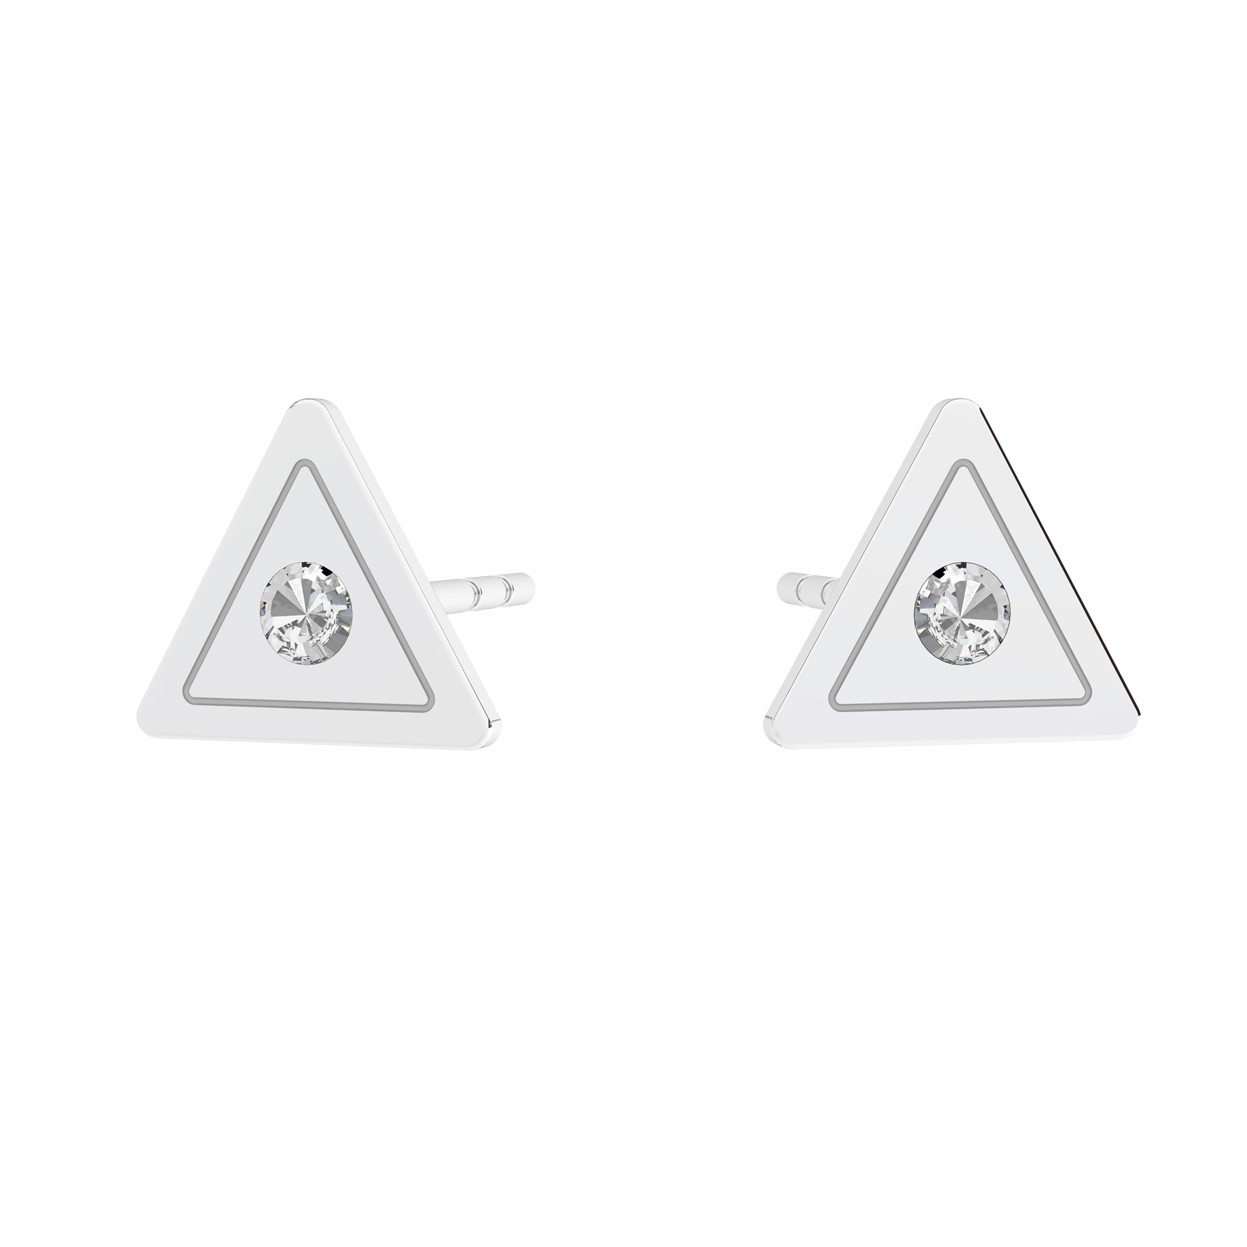 Triangle earrings - Bermuda, Sky&Co, sterling silver 925